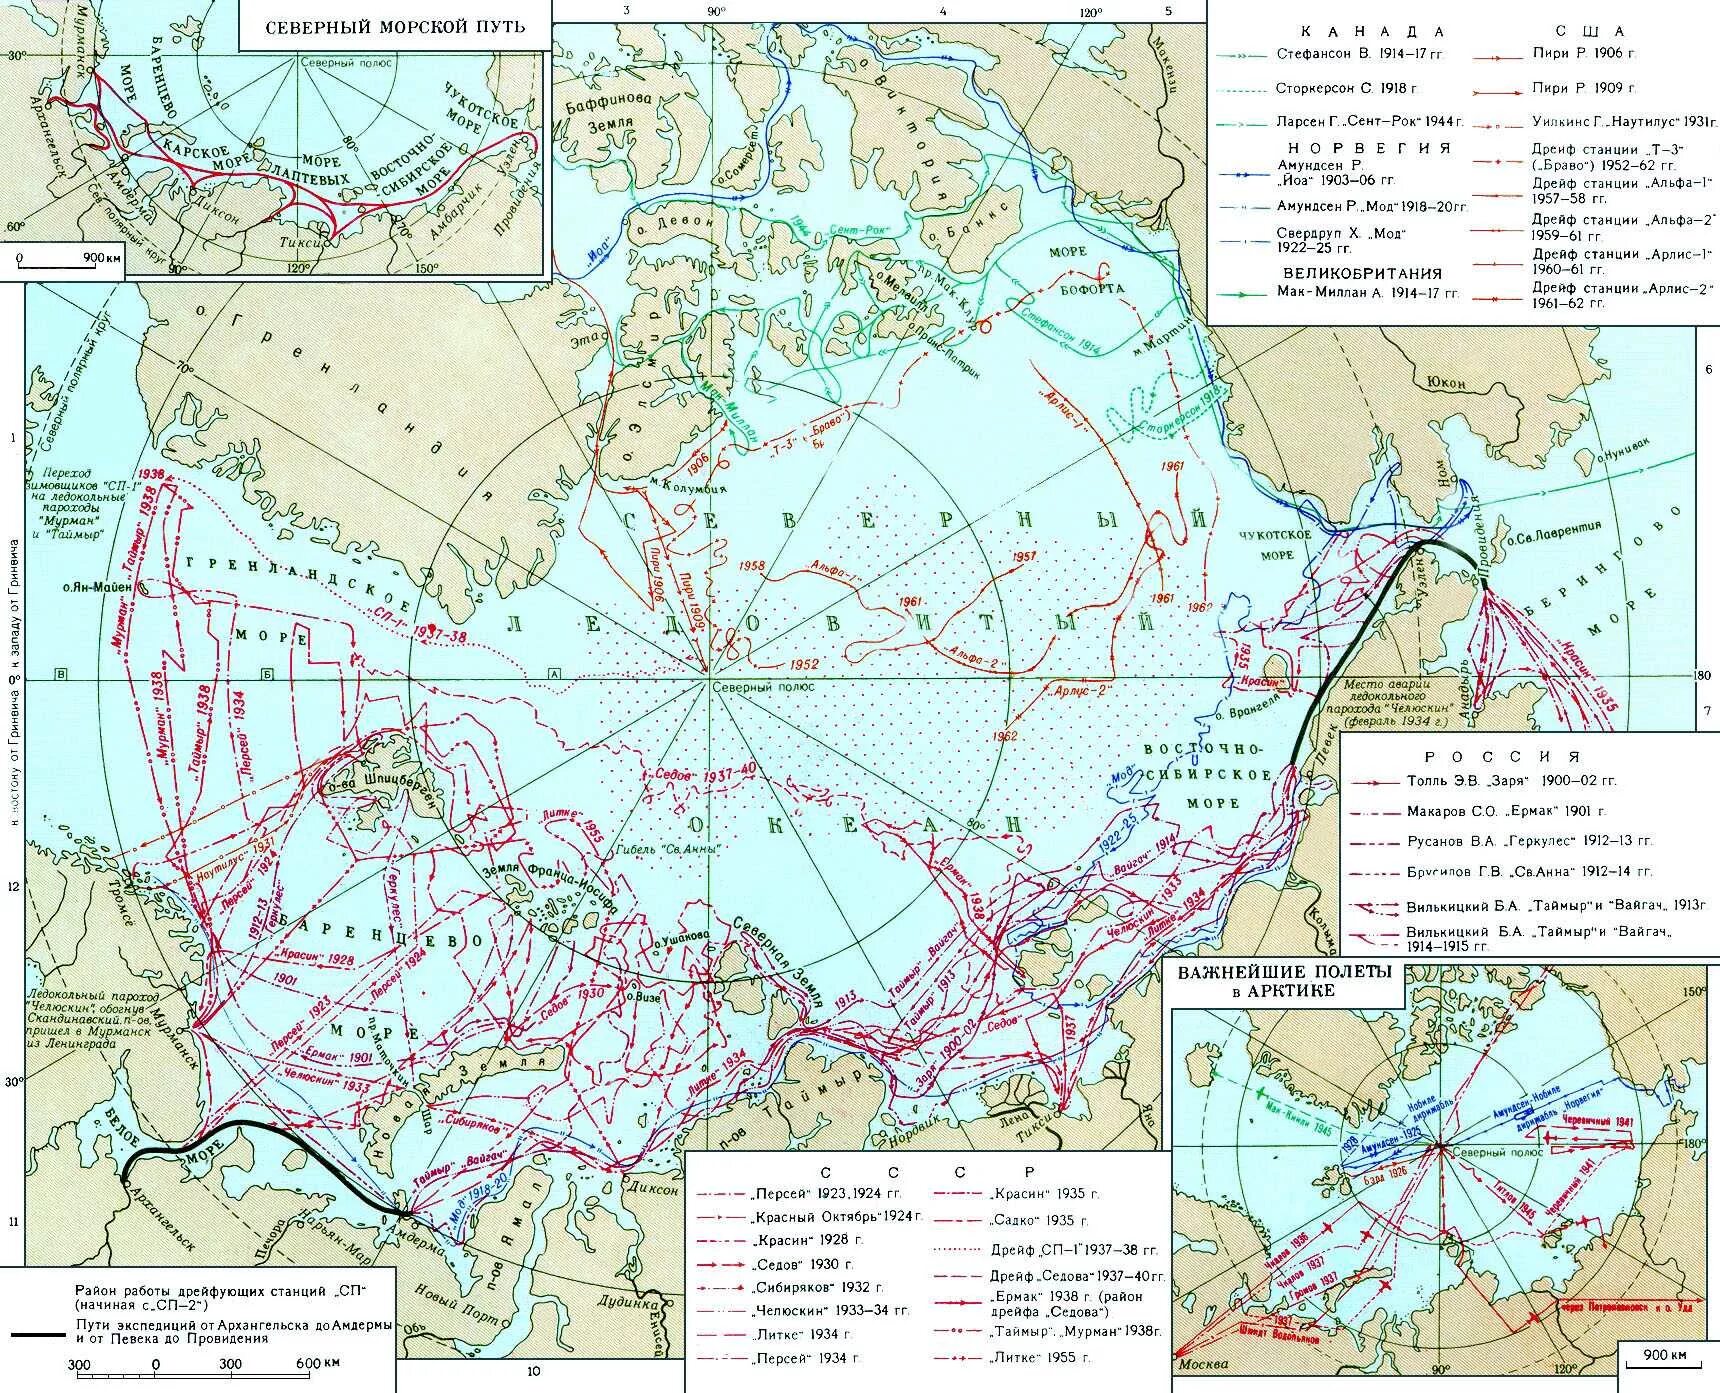 Важные экспедиции. Северный морской путь на карте Северного Ледовитого океана. Карта Северного морского пути 20 века. Исследование Арктики в 20 веке. Моря Северного морского пути на карте.